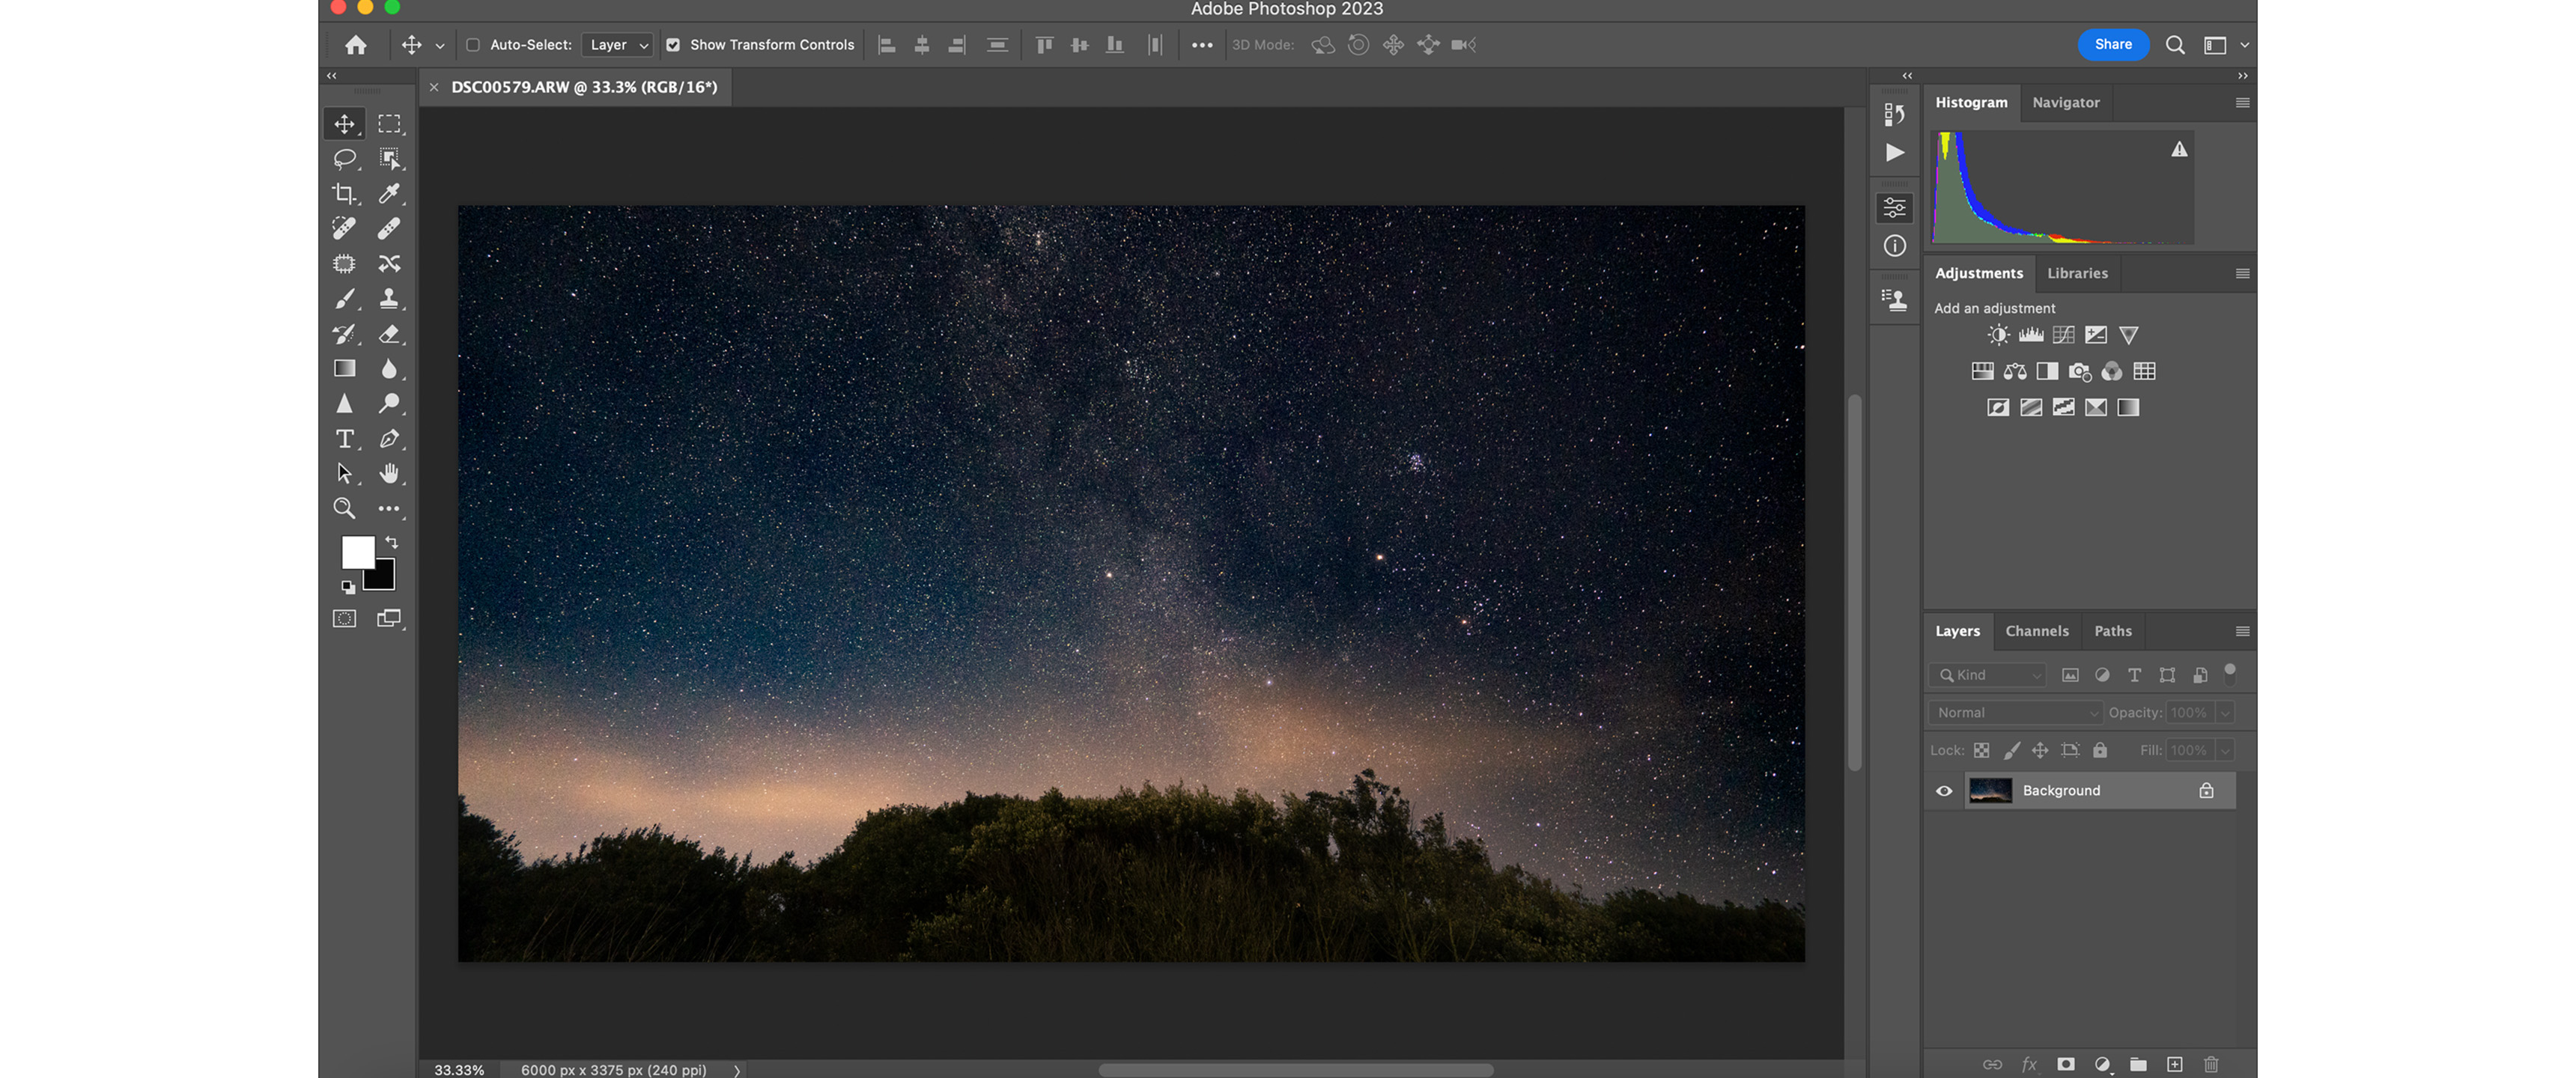 Adobe PhotoShop 2023 Beta 24.6 内置Ai绘图功能